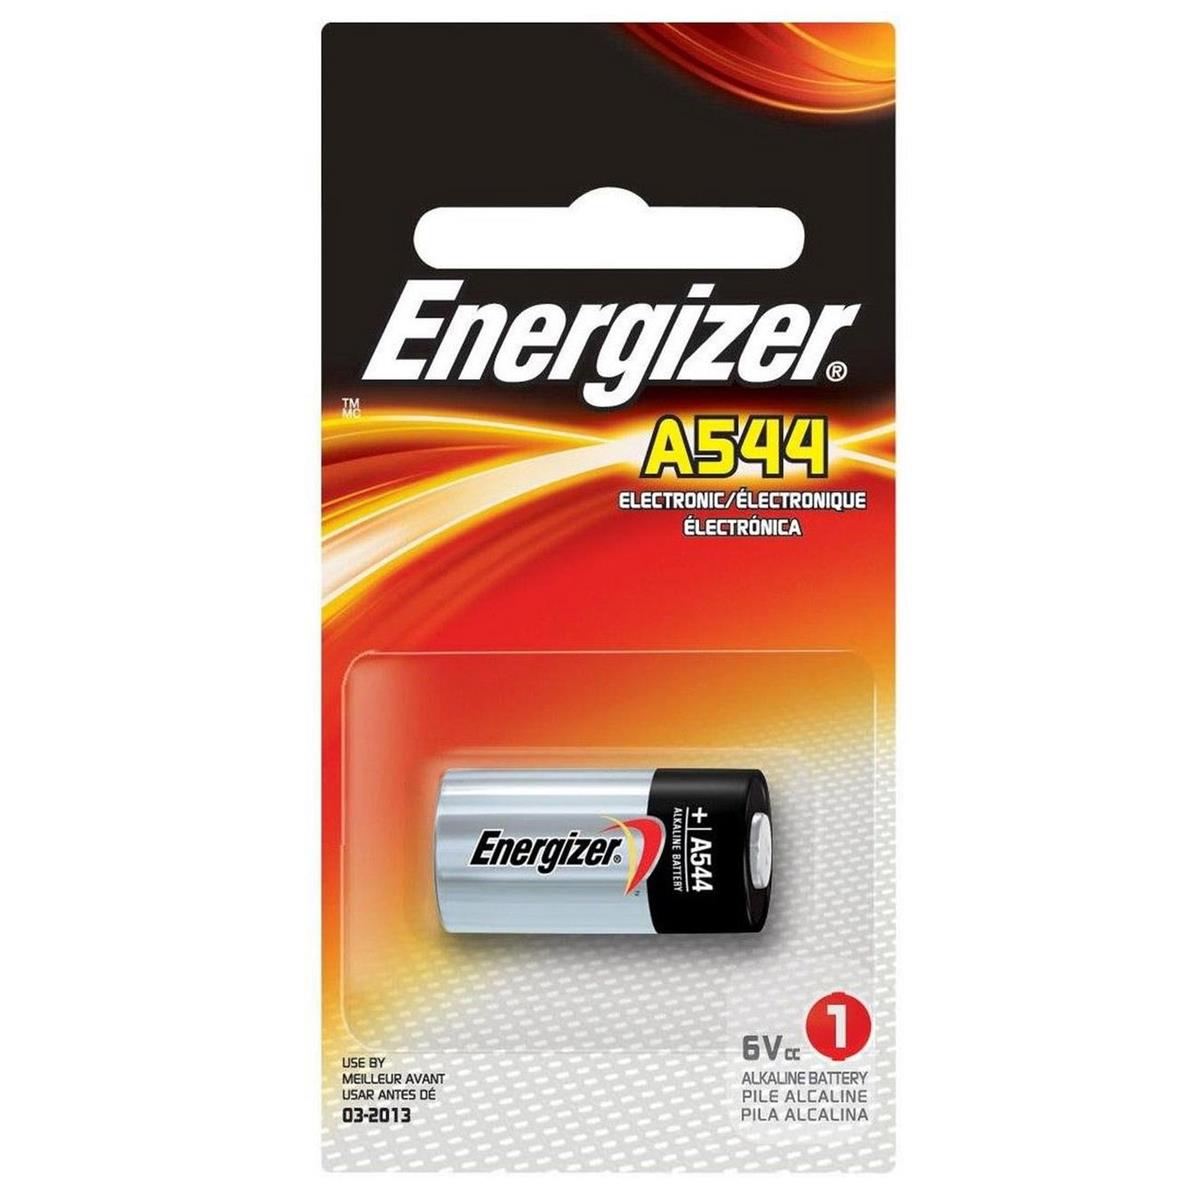 Image of Energizer A544 6V Alkaline Photo Battery